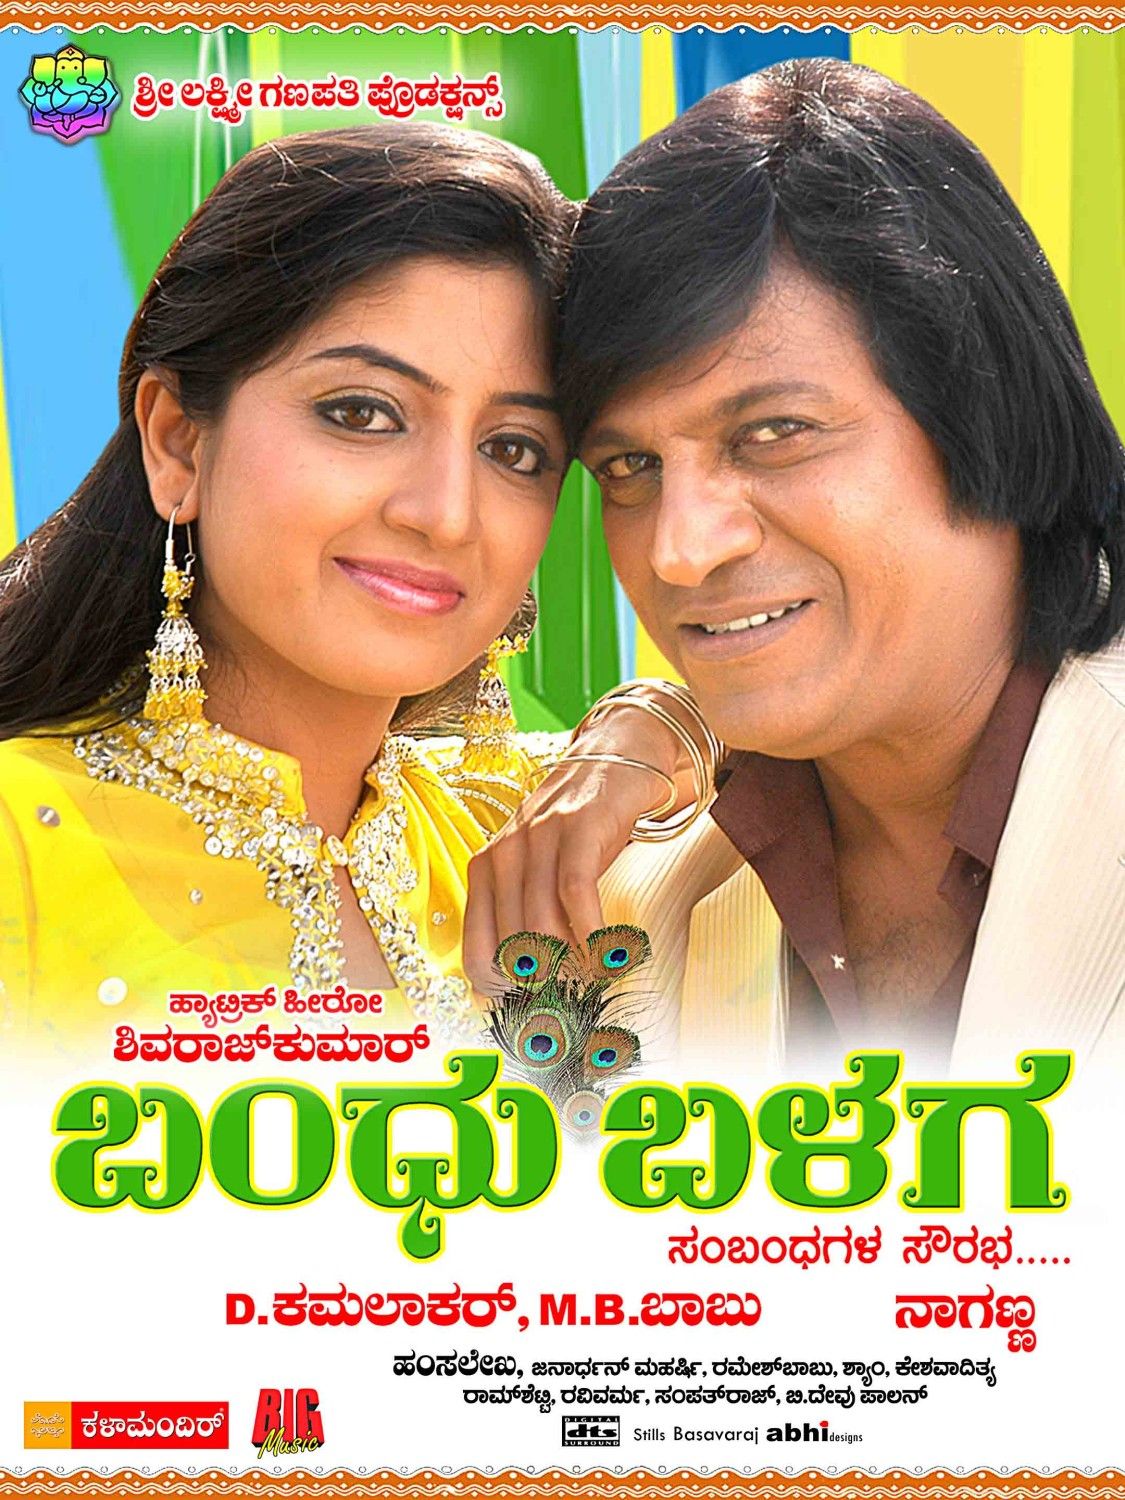 Extra Large Movie Poster Image for Bandu Balaga (#11 of 11)